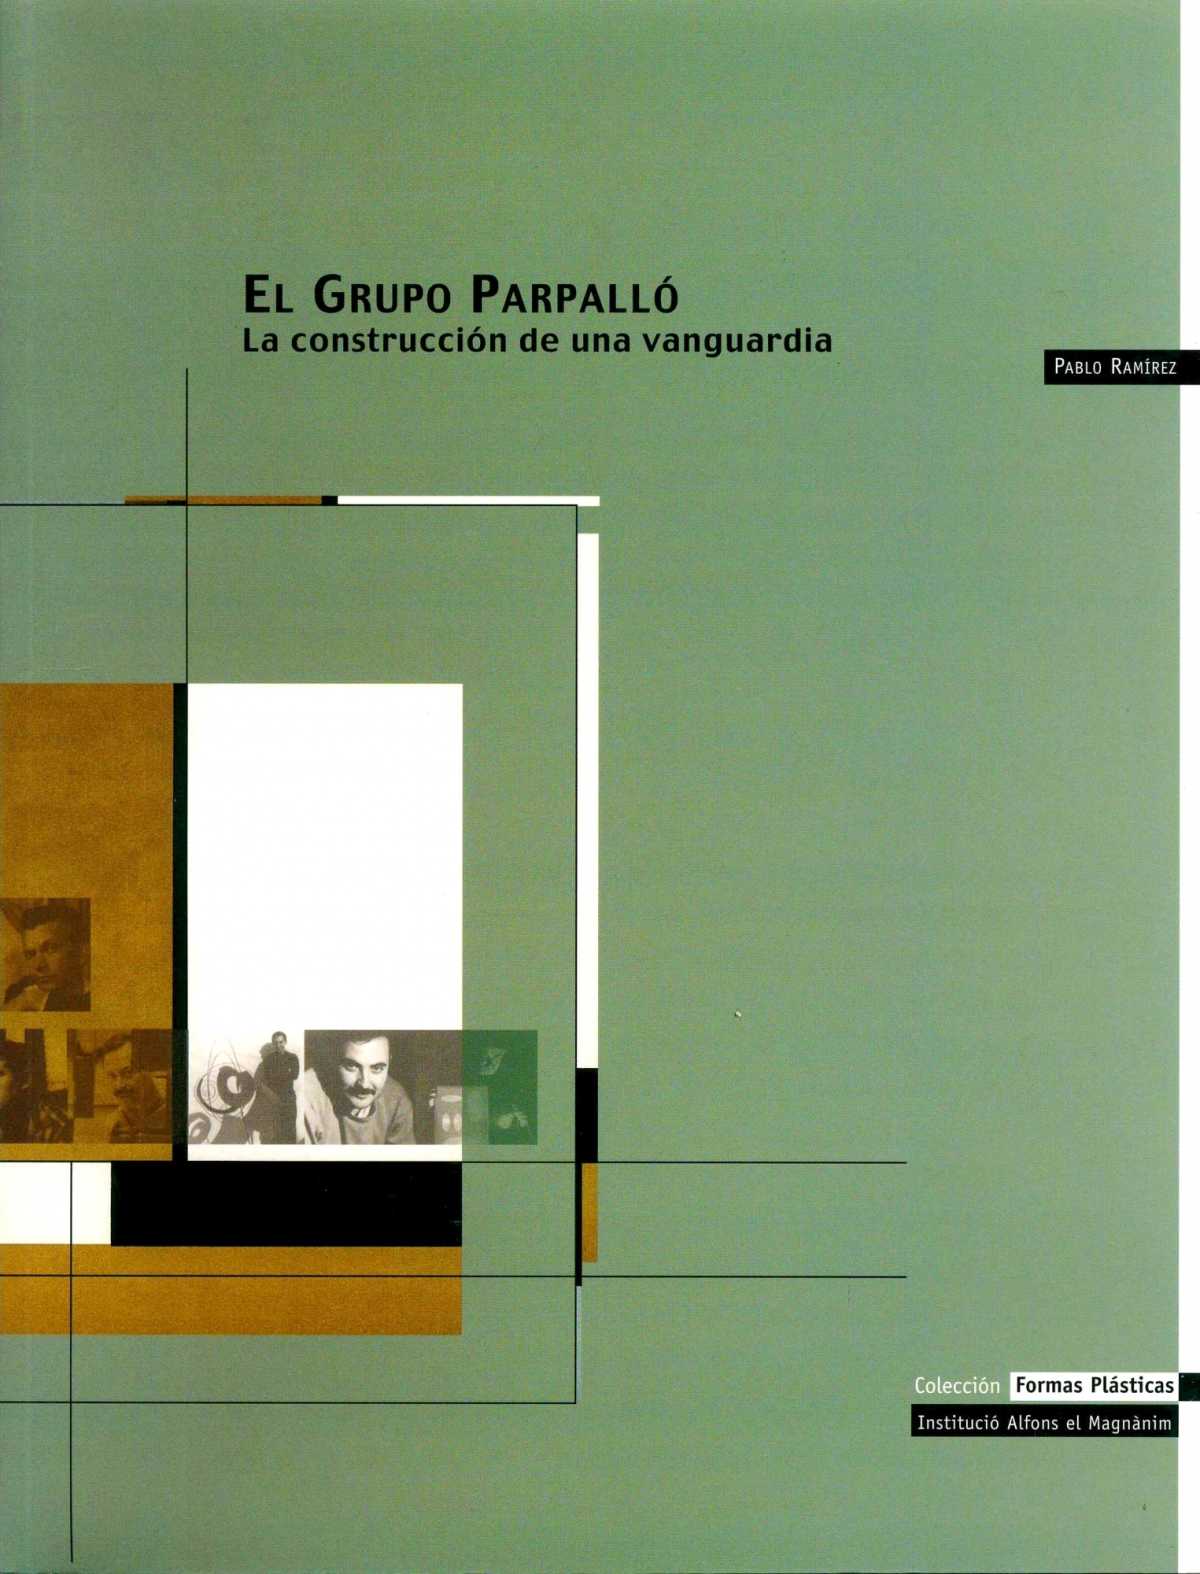 Publicación sobre el Grupo Parpalló.